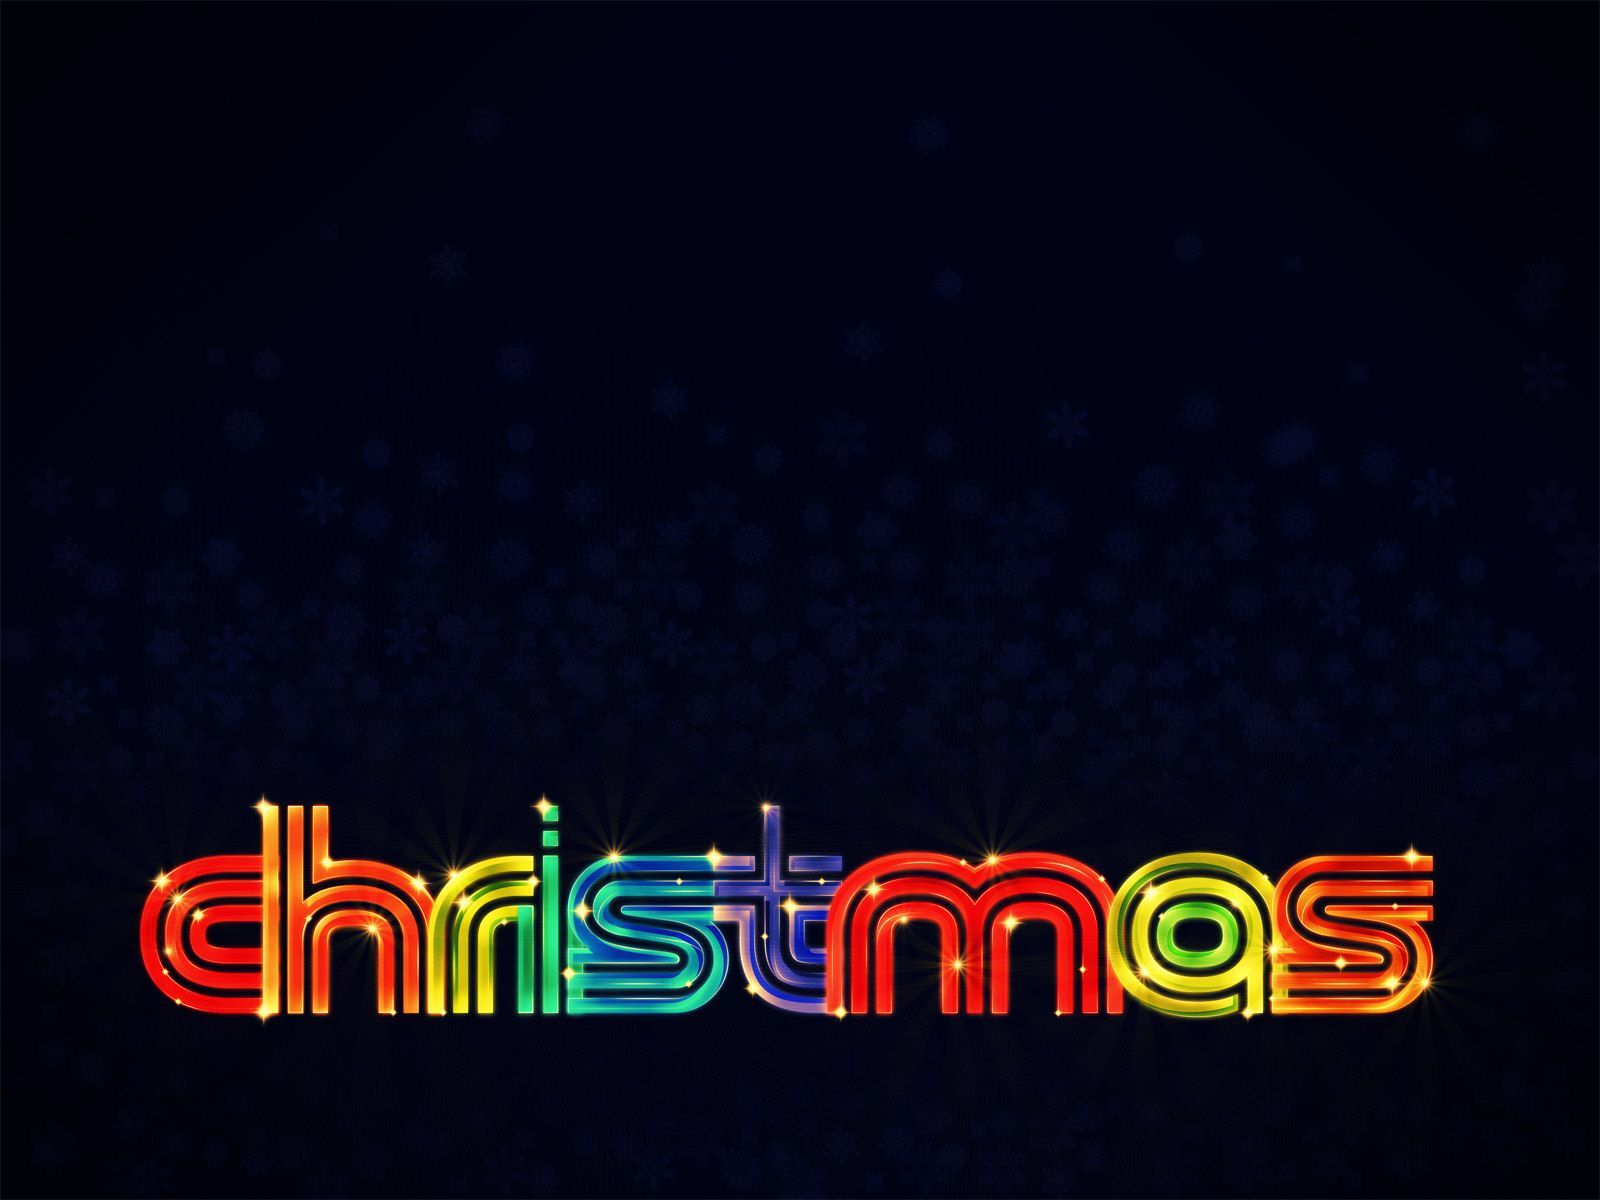 CHRISTMAS LIGHTS. Christmas lights wallpaper, Christmas wallpaper, Christmas lights